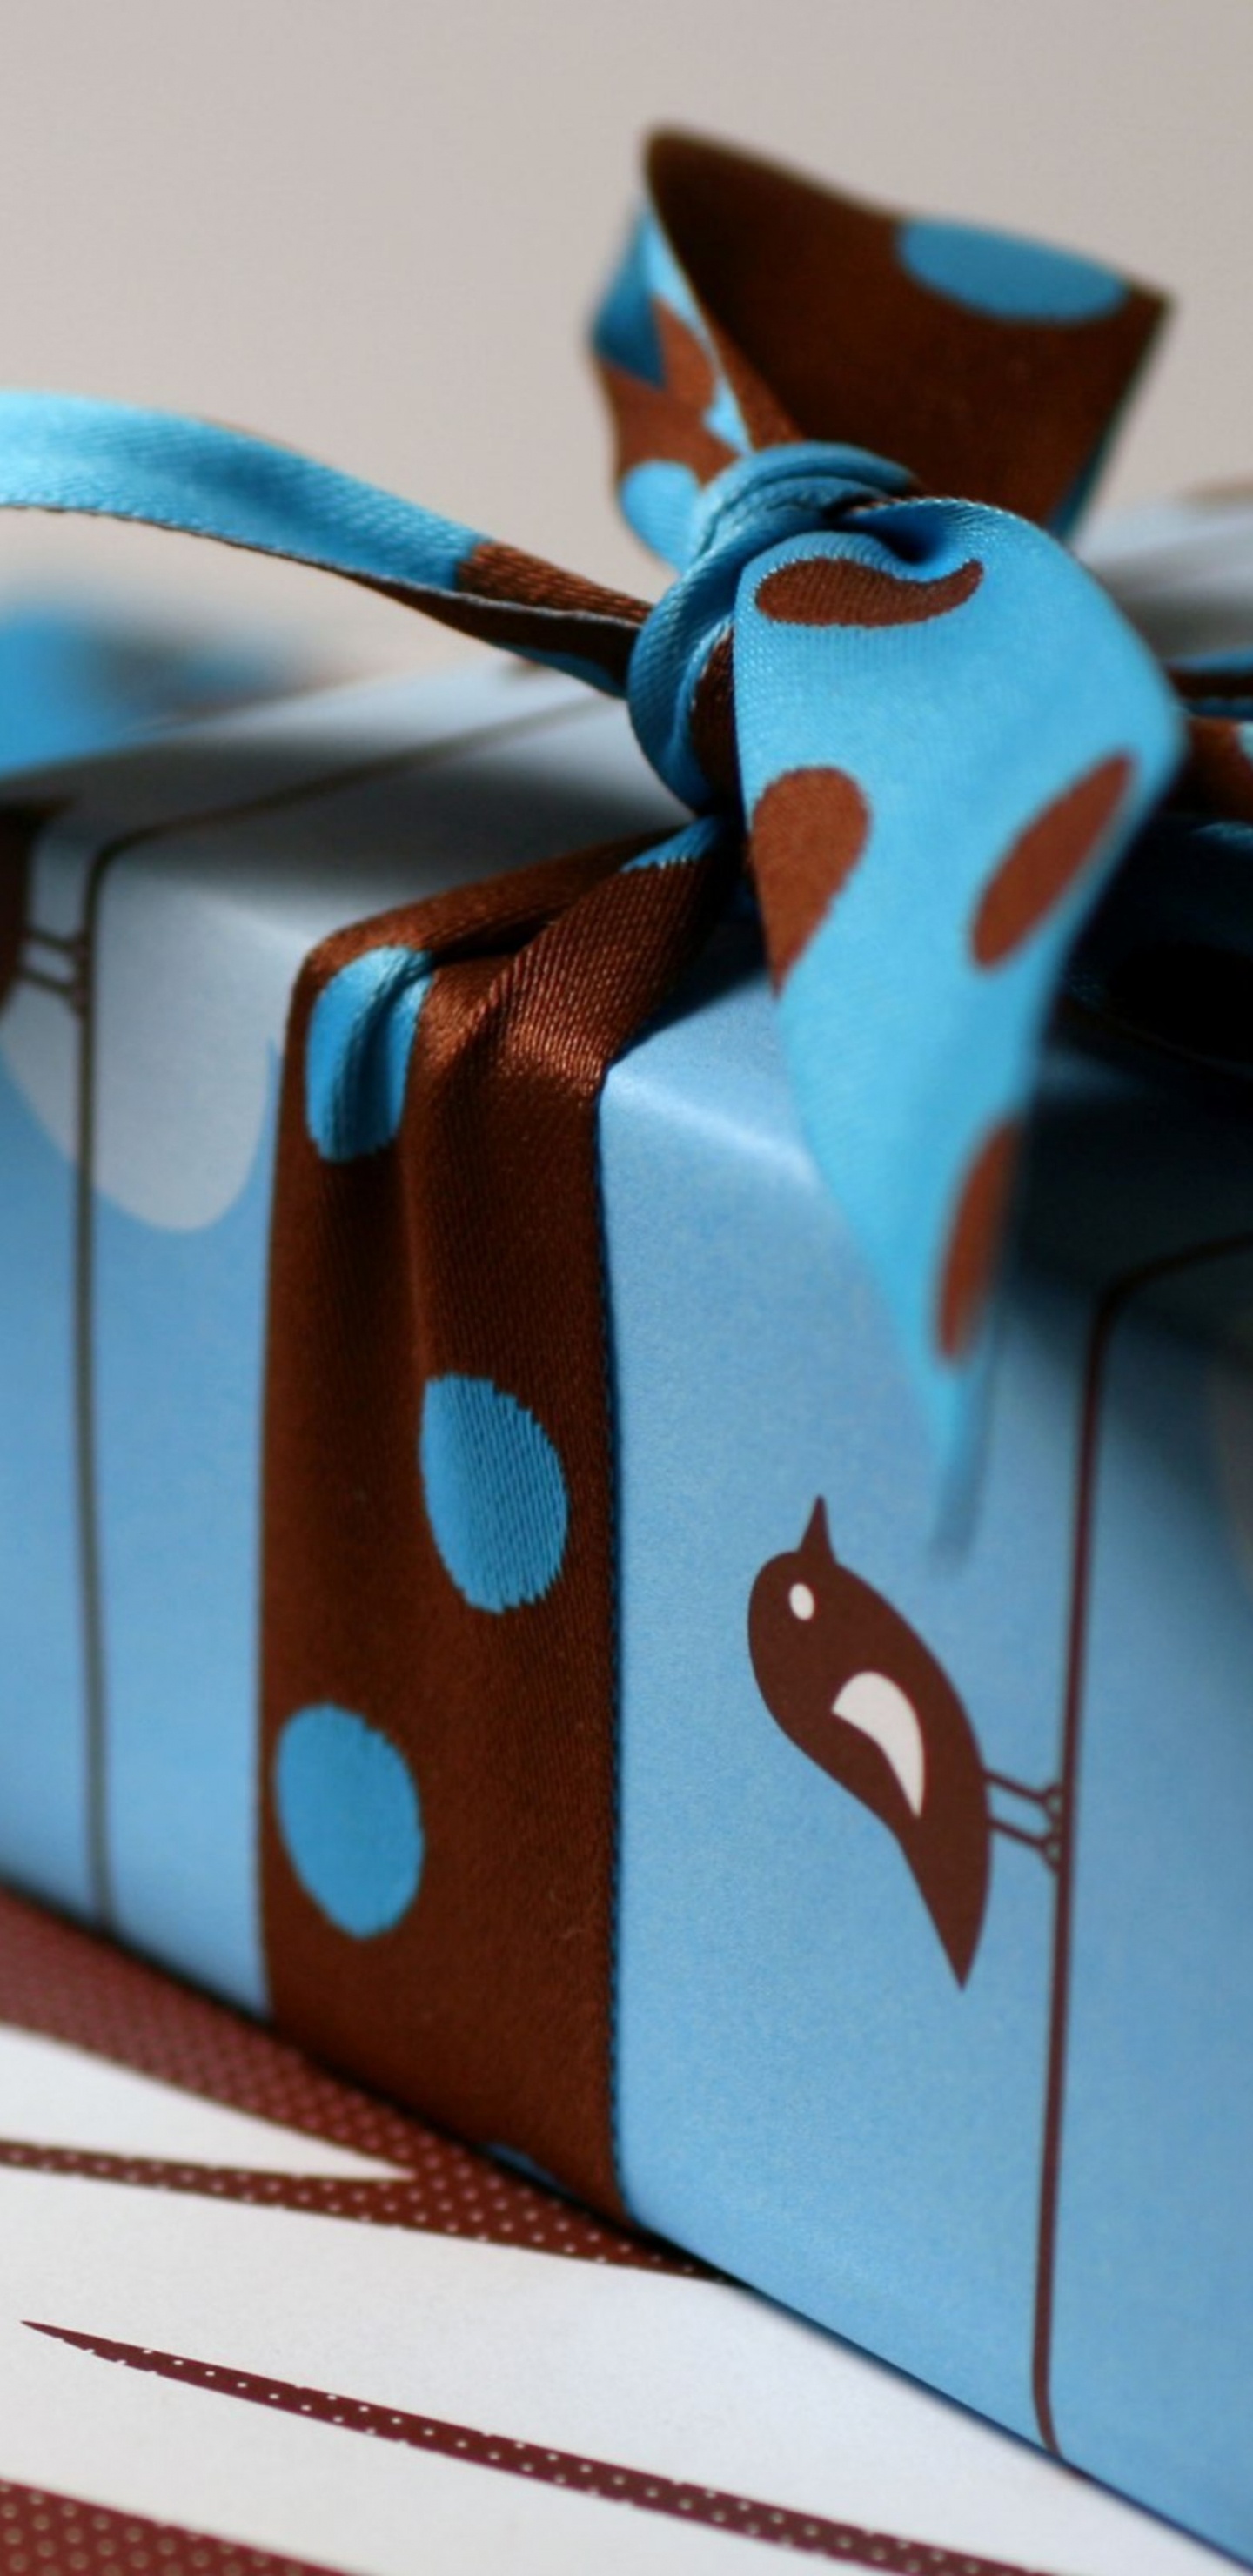 礼物, 盒, 丝带, 礼品包装, 棕色 壁纸 1440x2960 允许